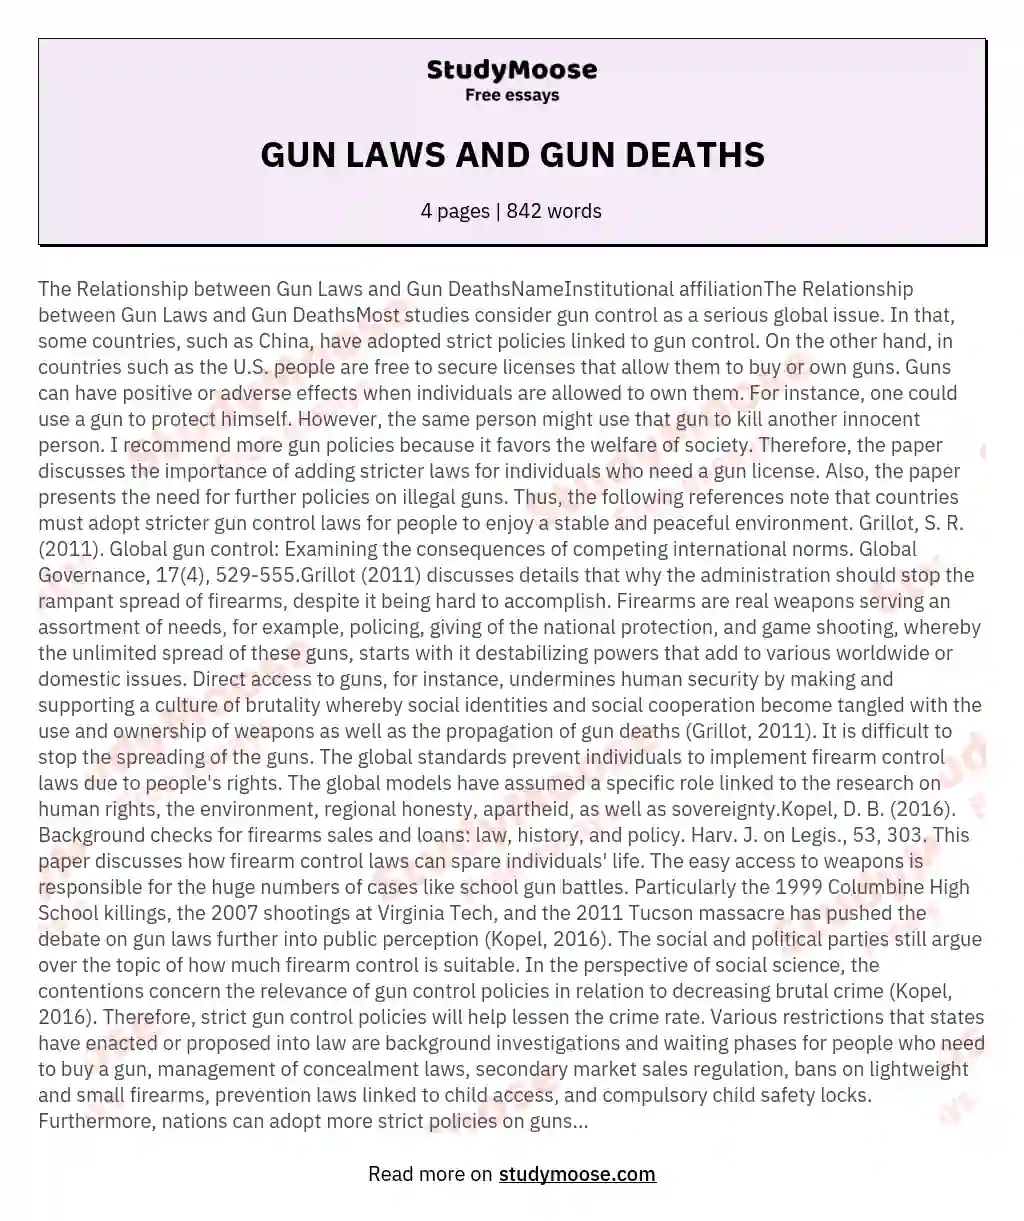 GUN LAWS AND GUN DEATHS